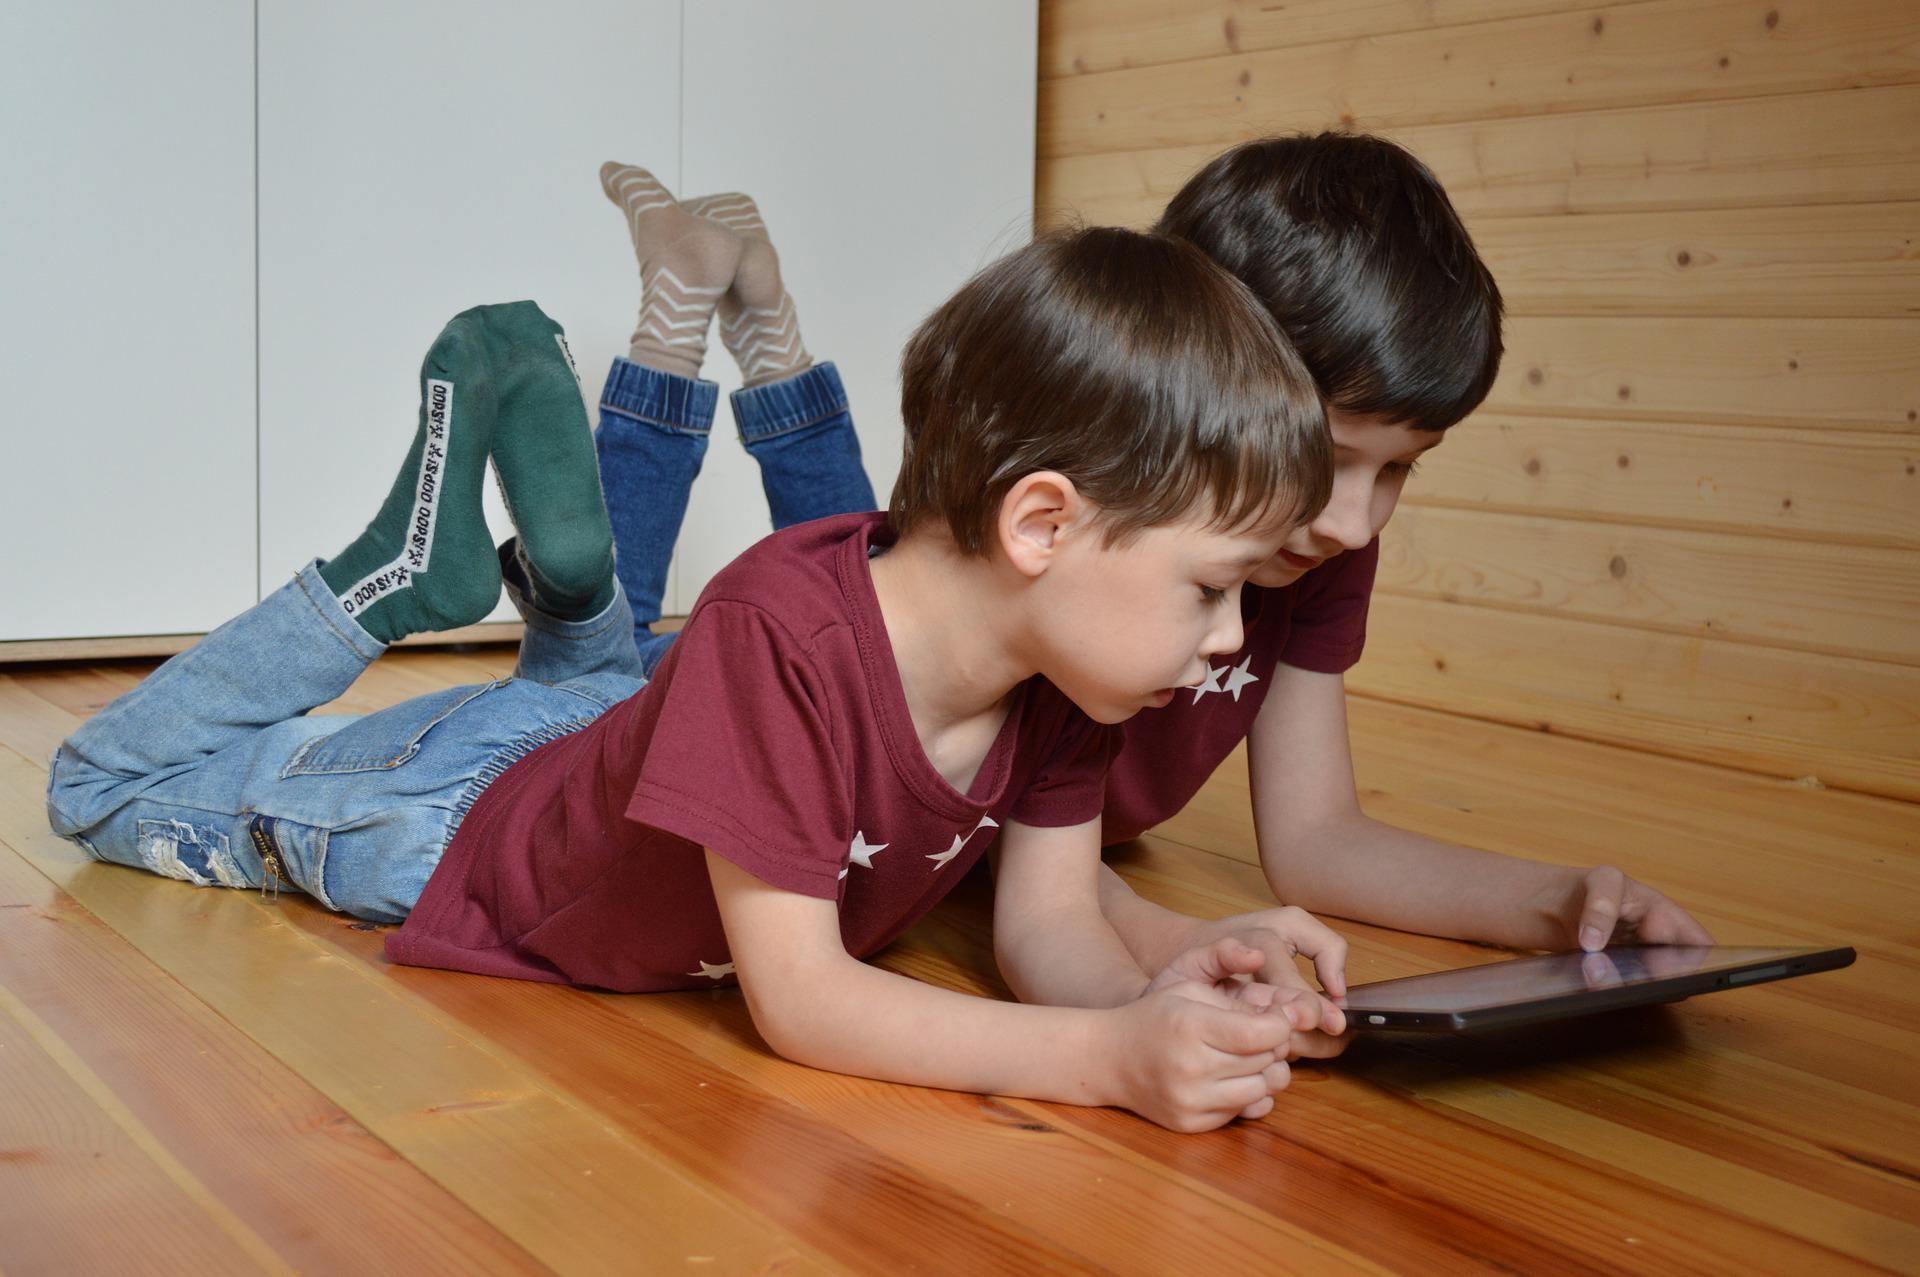 bildschirmzeit-kinder-schauen-auf-tablet